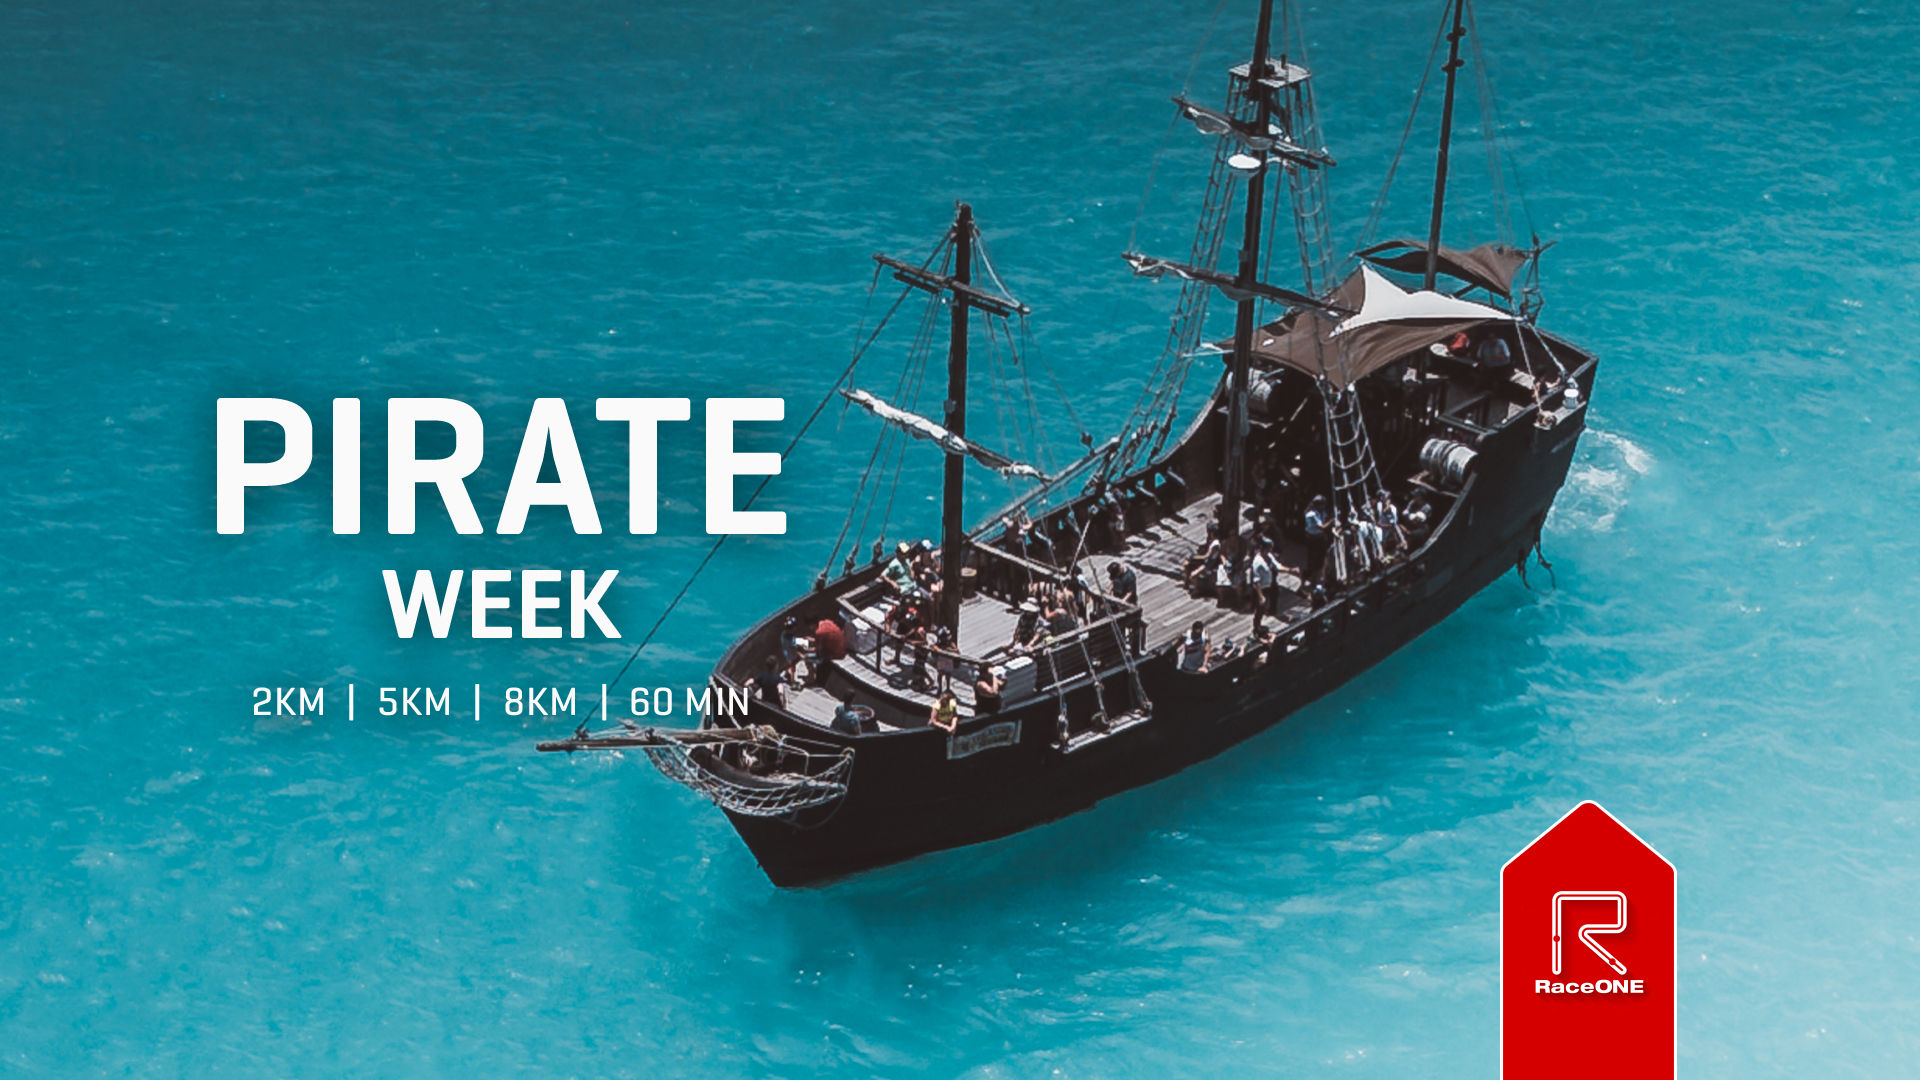 Pirate Week - 5km